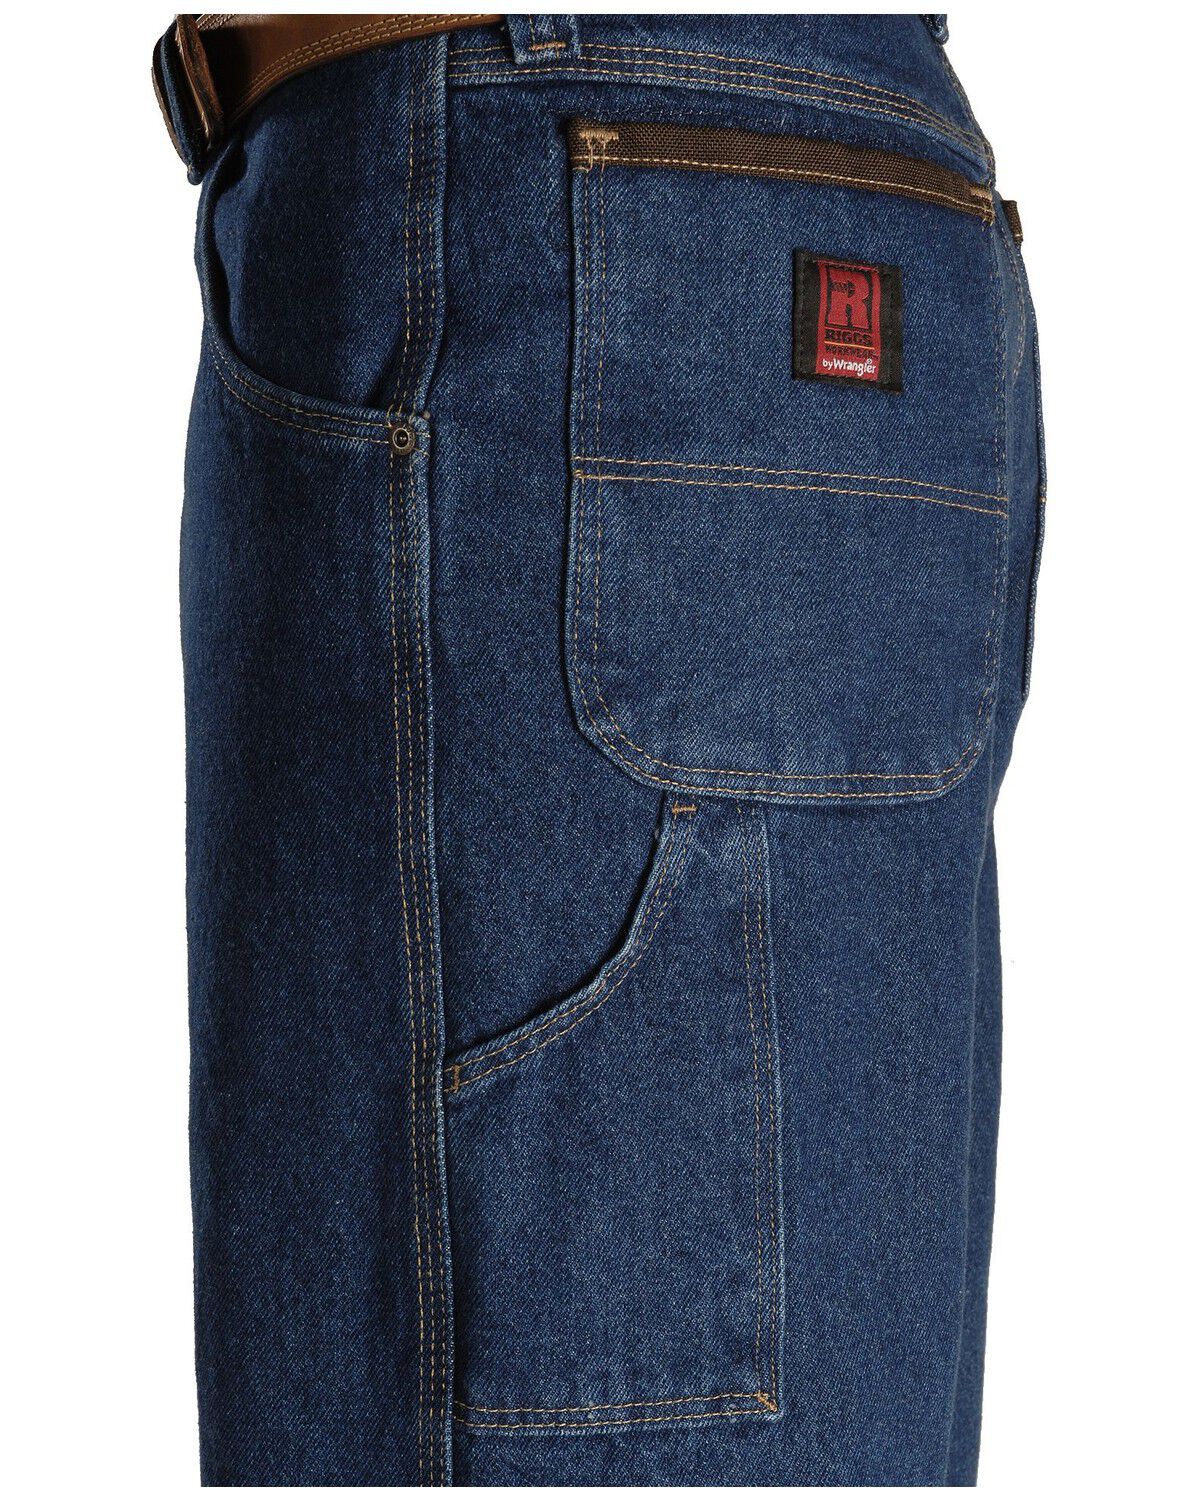 wrangler carpenter jeans loose fit